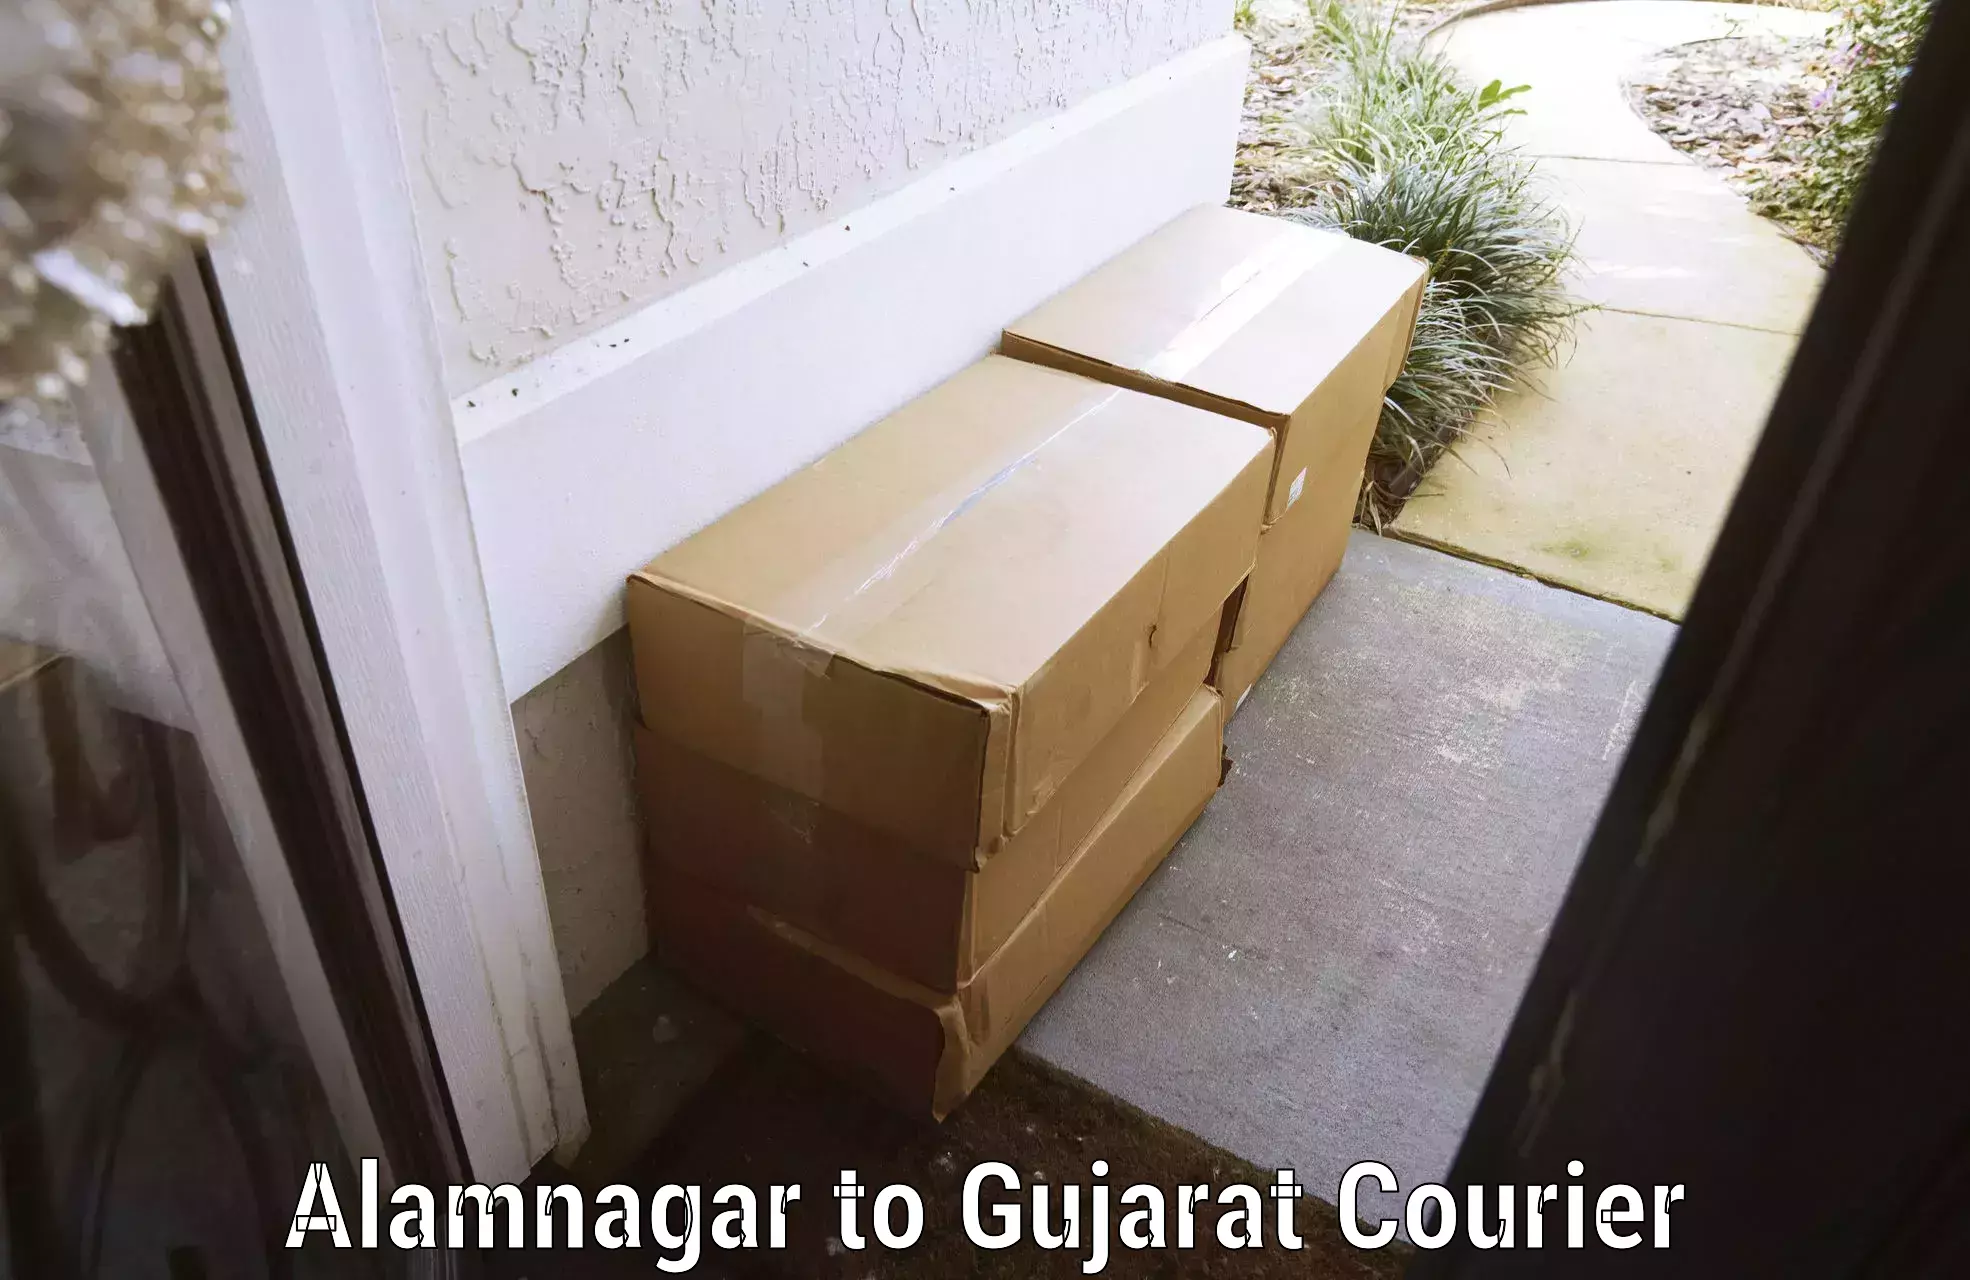 Holiday season luggage delivery Alamnagar to Dhoraji